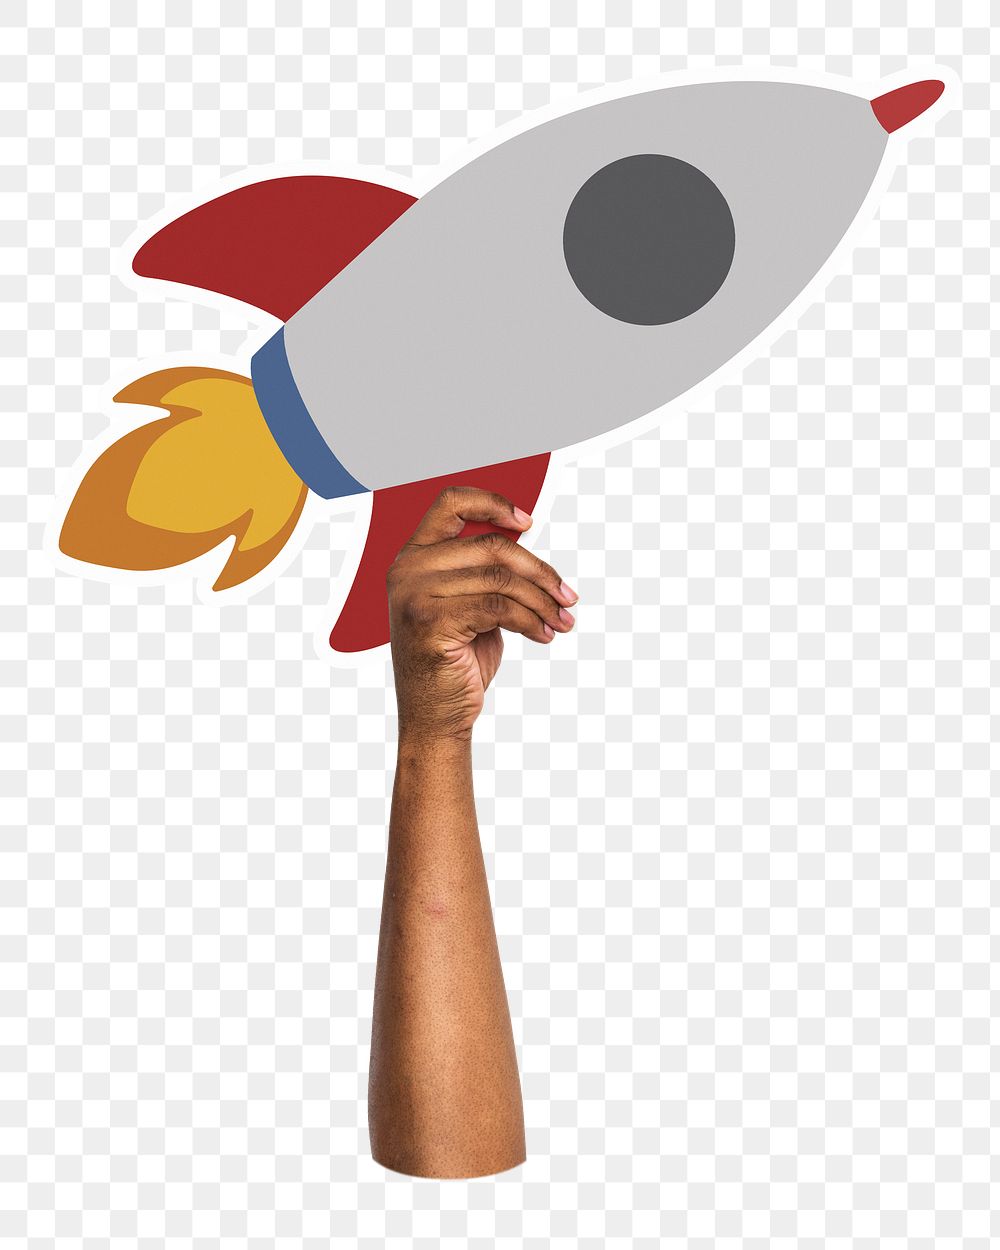 Hand holding png rocket sticker, transparent background